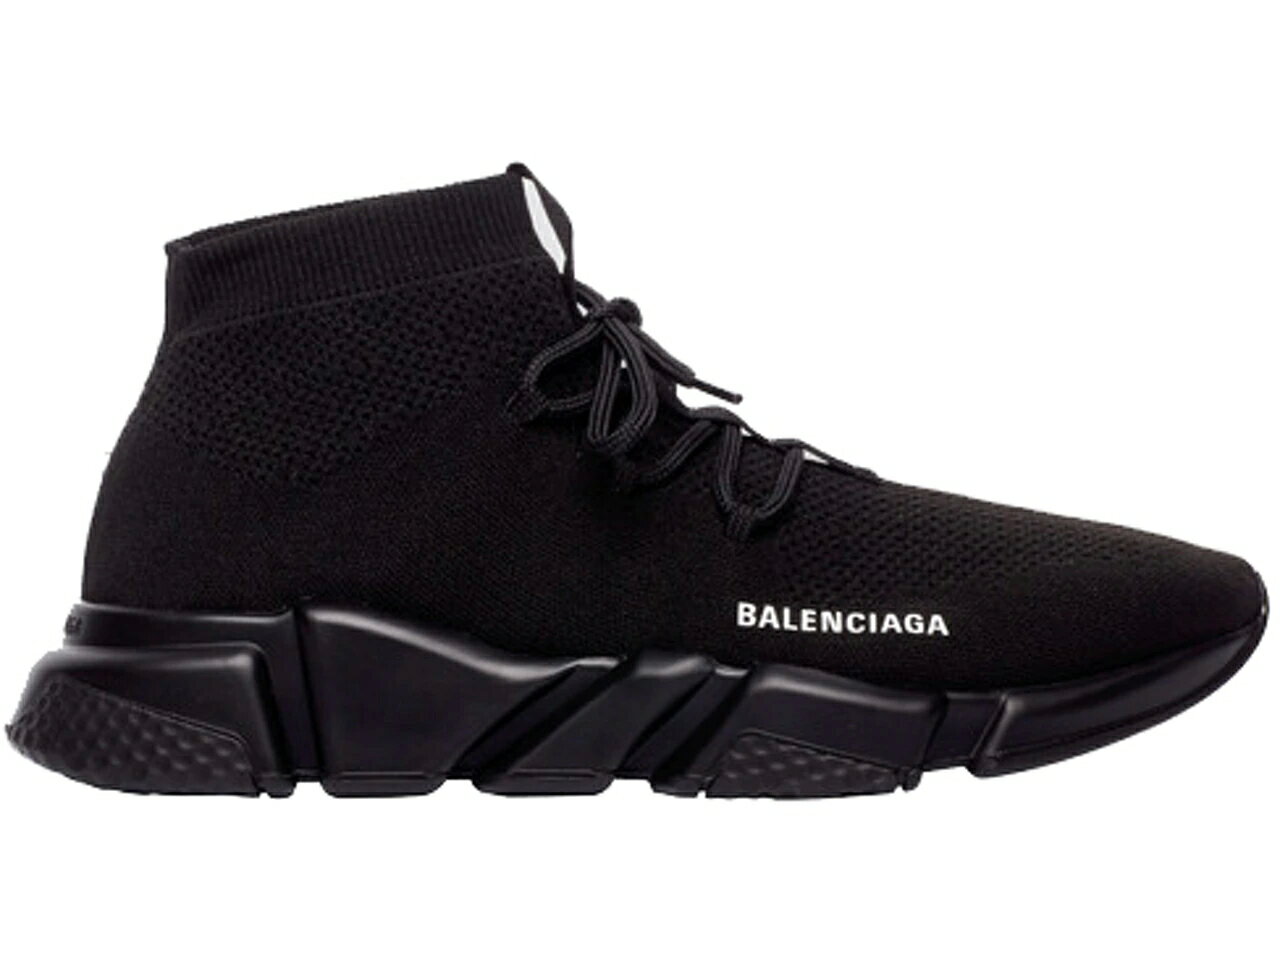 バレンシアガ スピード トレーナー 黒色 ブラック スニーカー メンズ 【 BALENCIAGA SPEED TRAINER LACE UP BLACK / 】